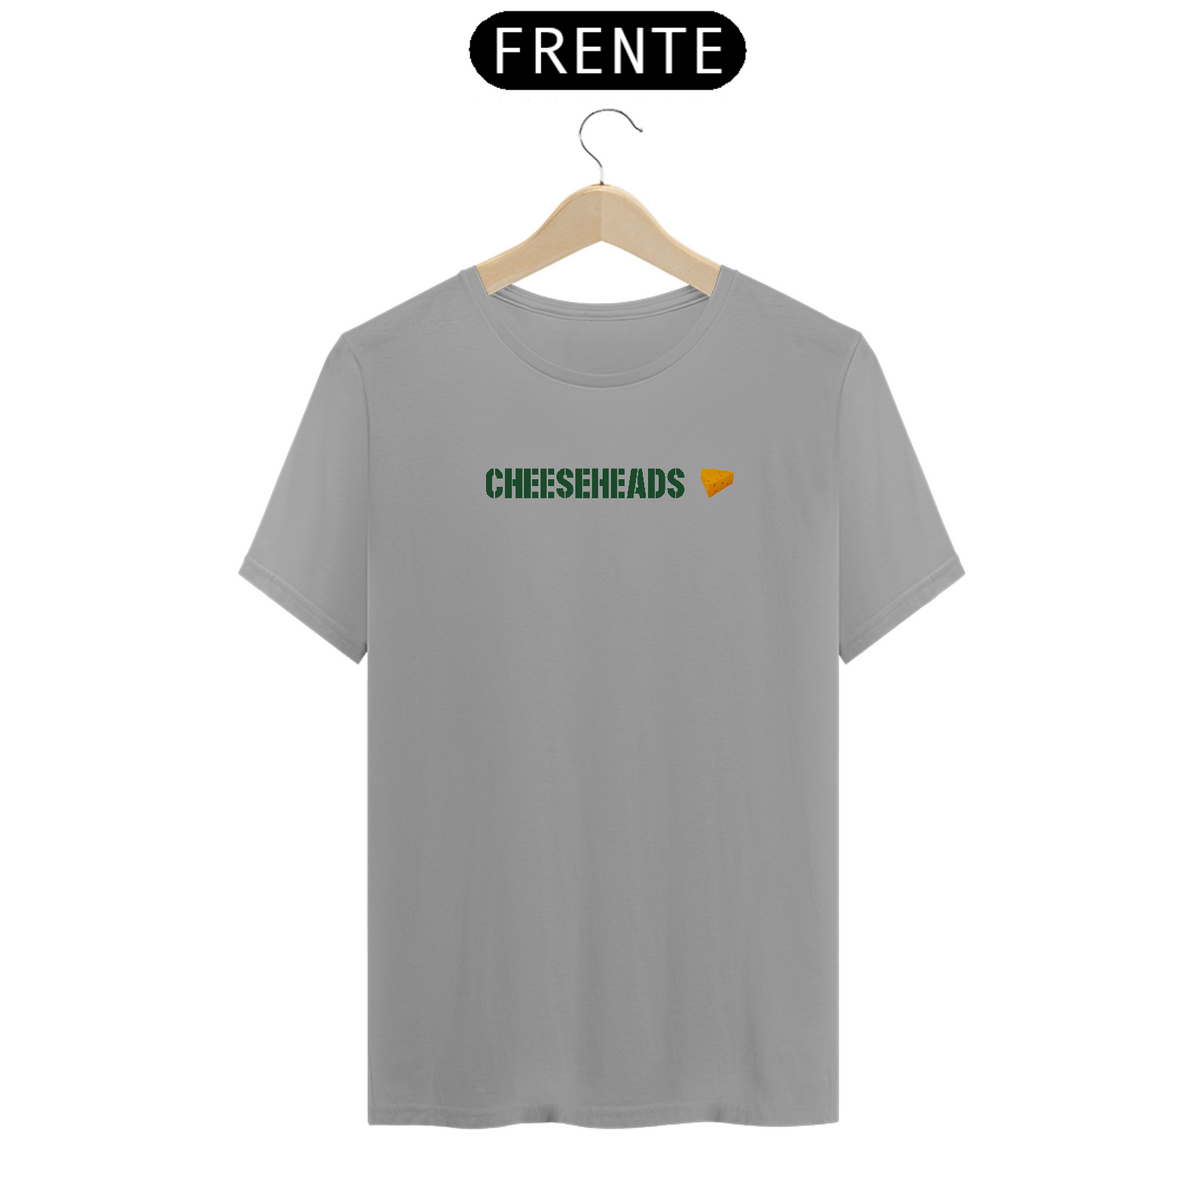 Nome do produto: Camiseta Quality Cheeseheads